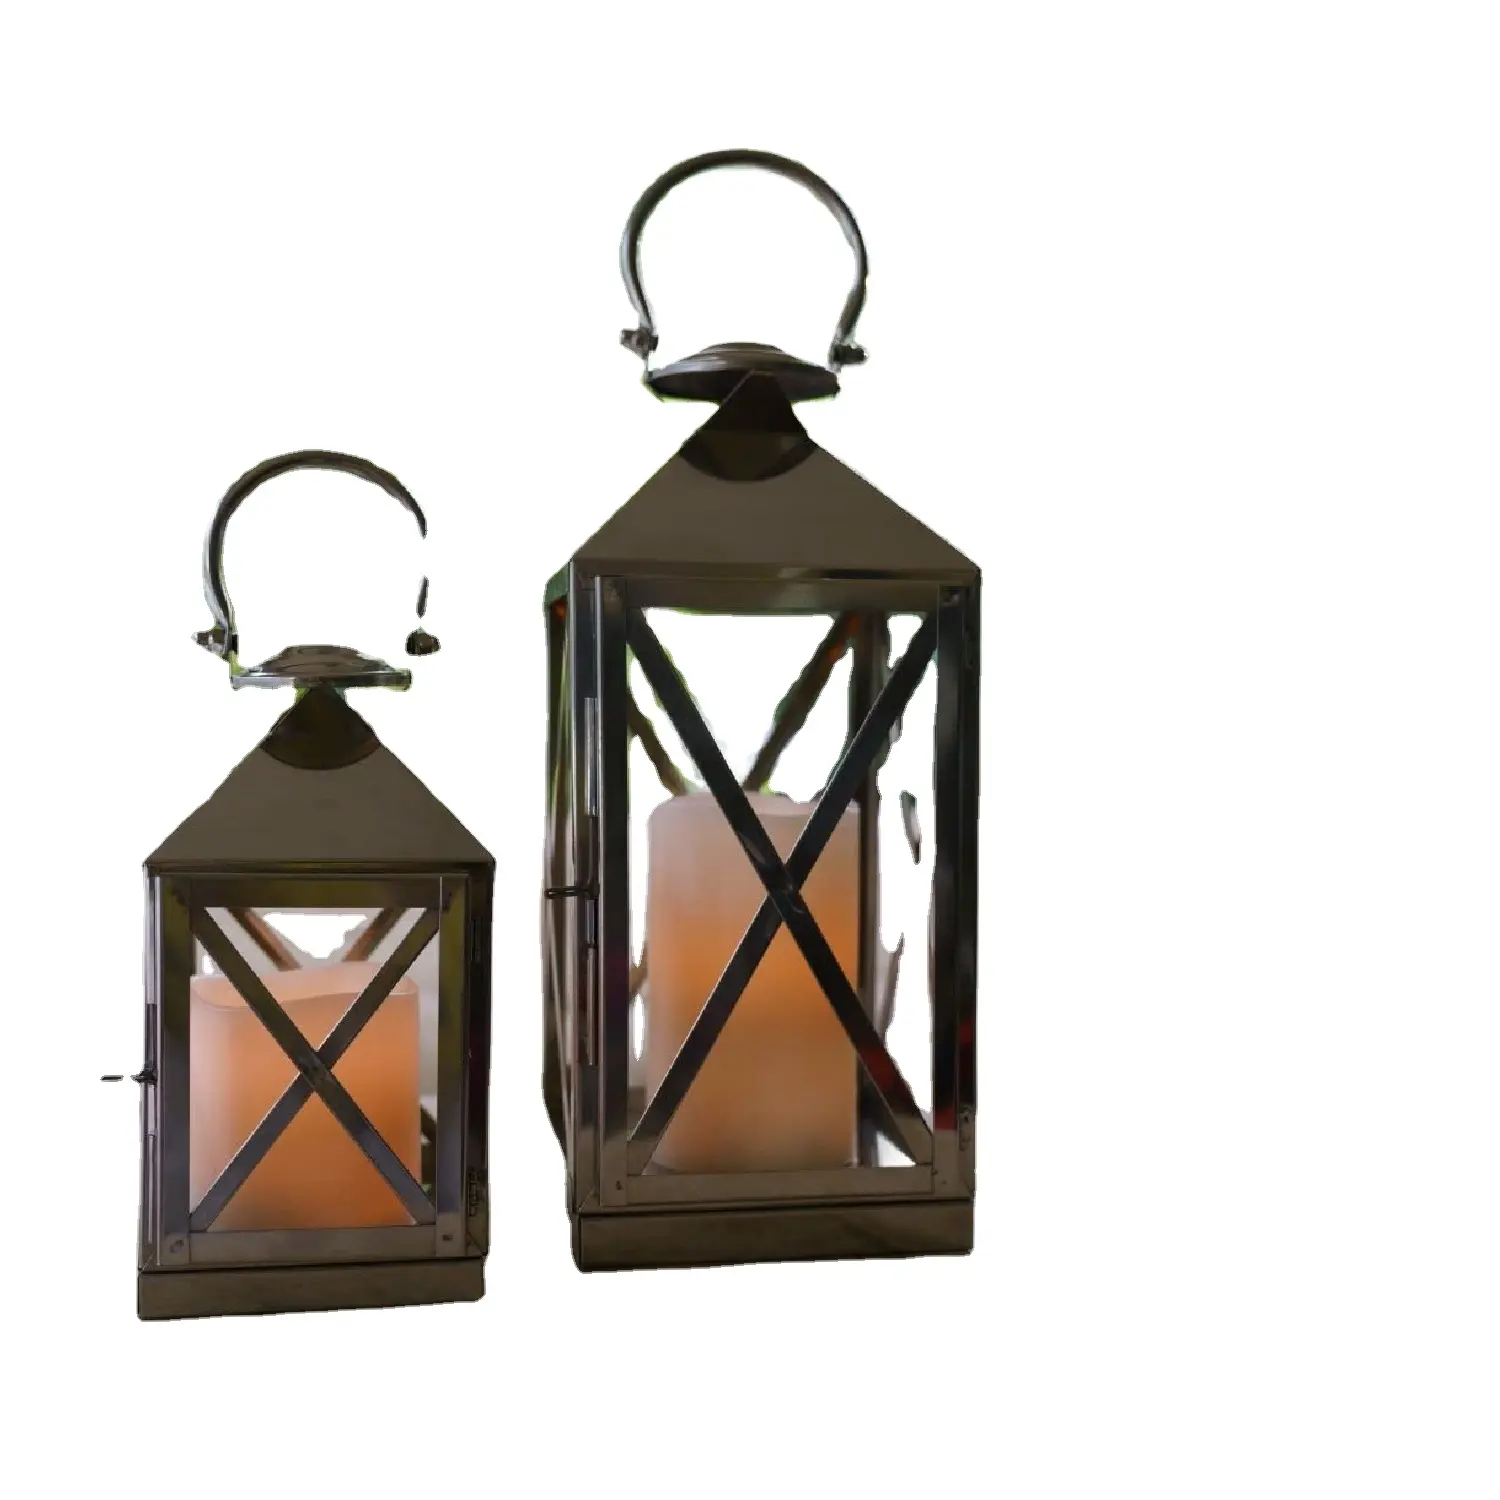 Conjunto de 2 lanternas de metal e vidro para velas, com revestimento em pó preto e formato quadrado, excelente qualidade para decoração de casa